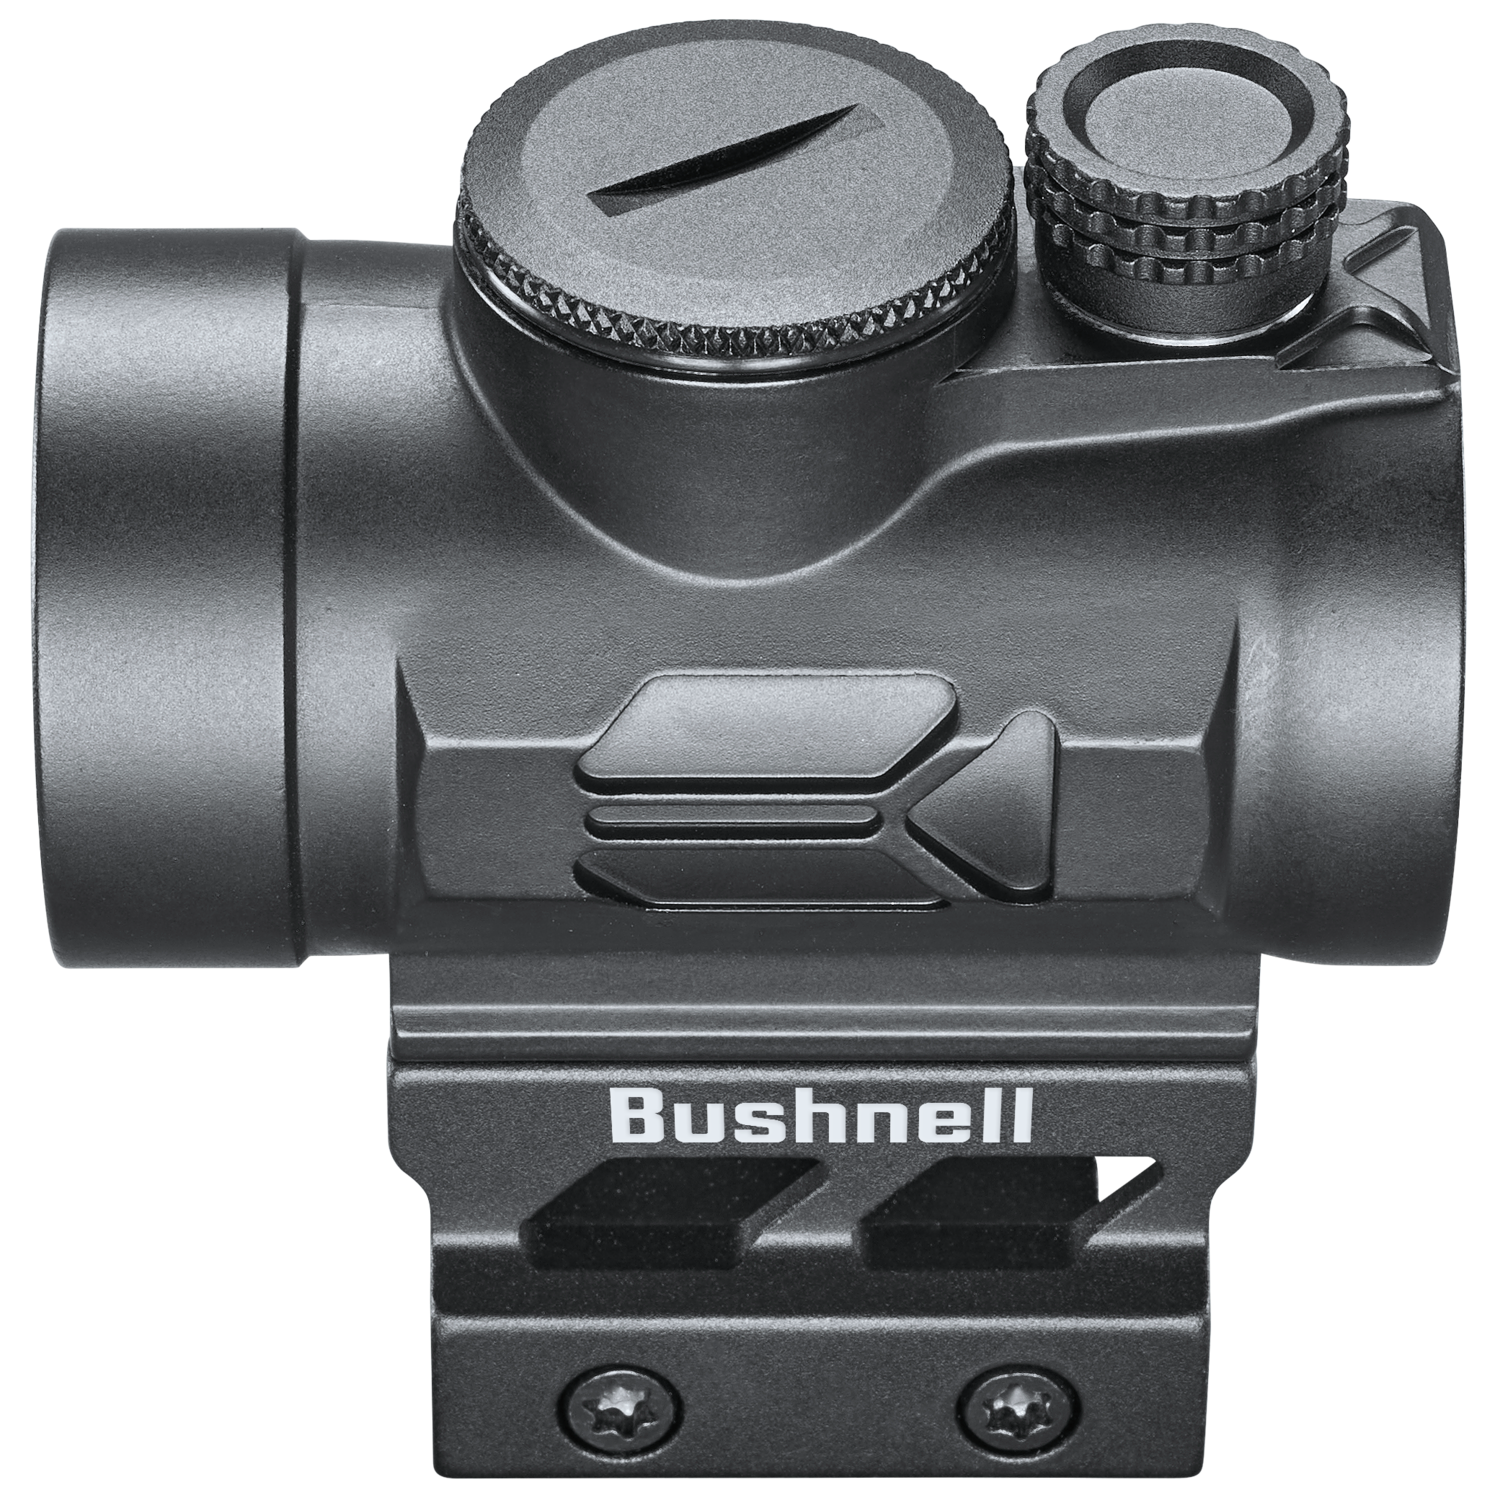 BUSHNELL ドットサイト TRS-25 AR OPTICS 通販